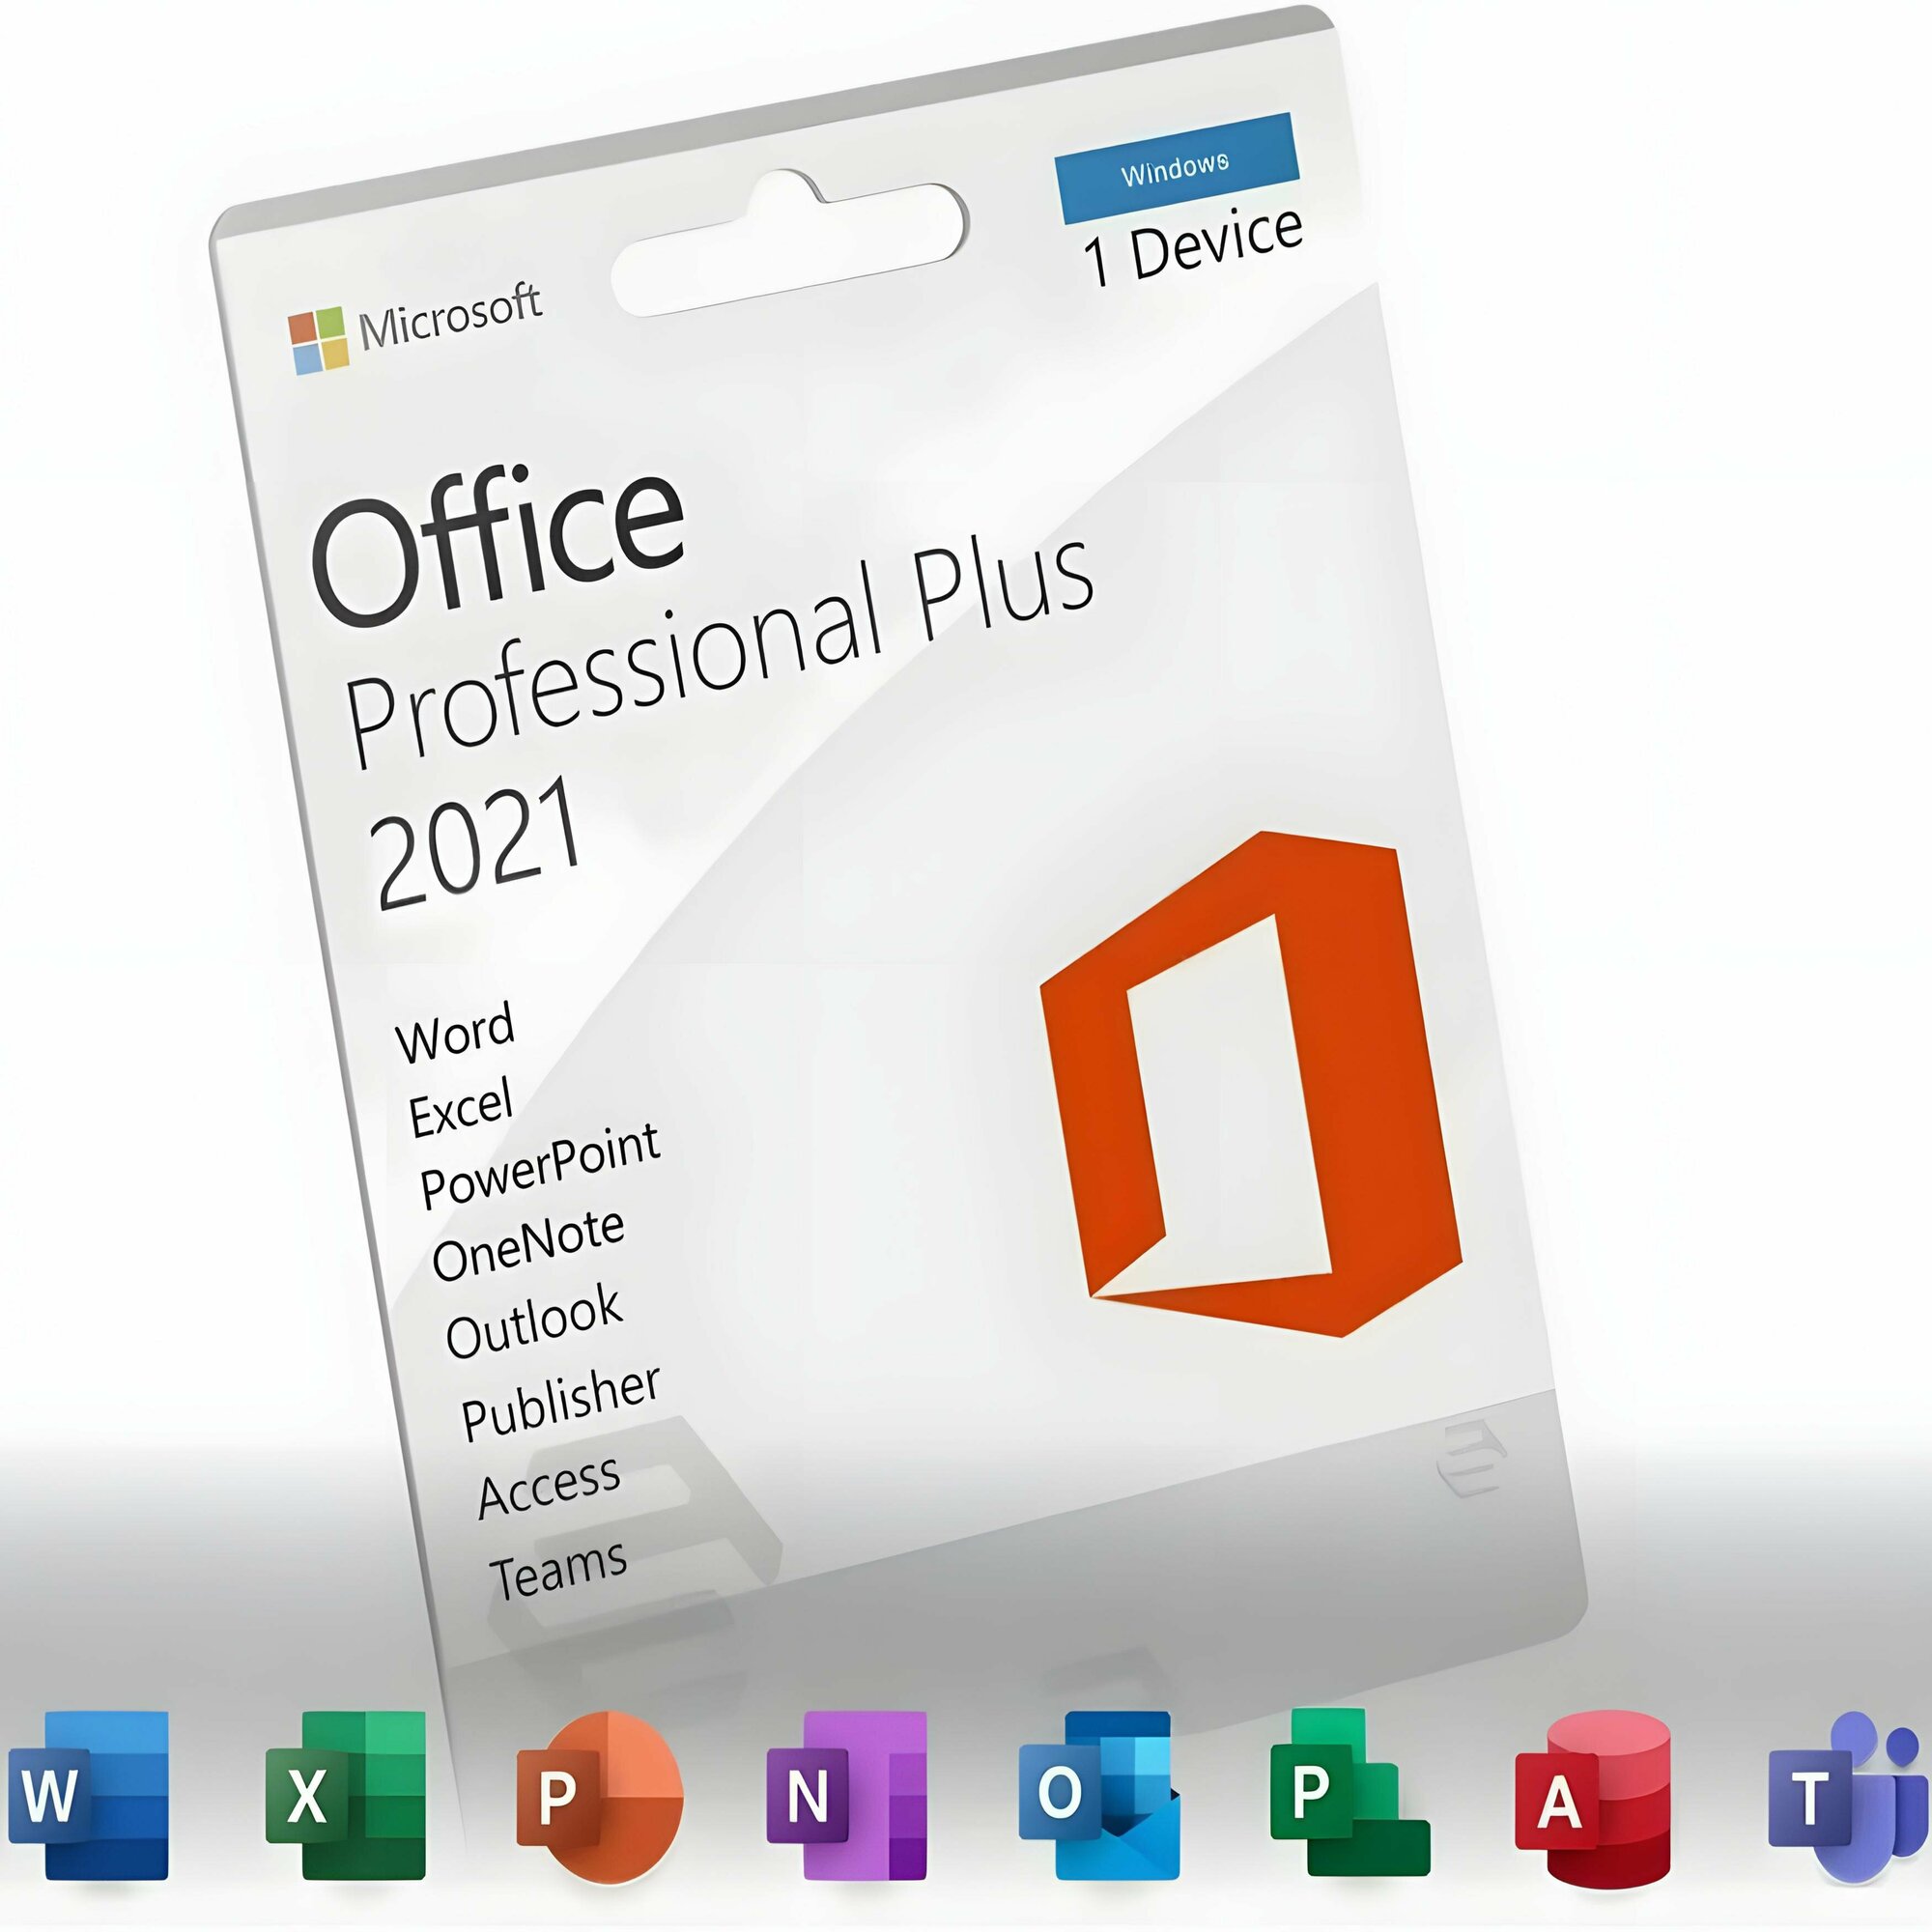 Microsoft Office 2021 Professional Plus на 1 ПК онлайн активация (без привязки к учетной записи) электронный ключ